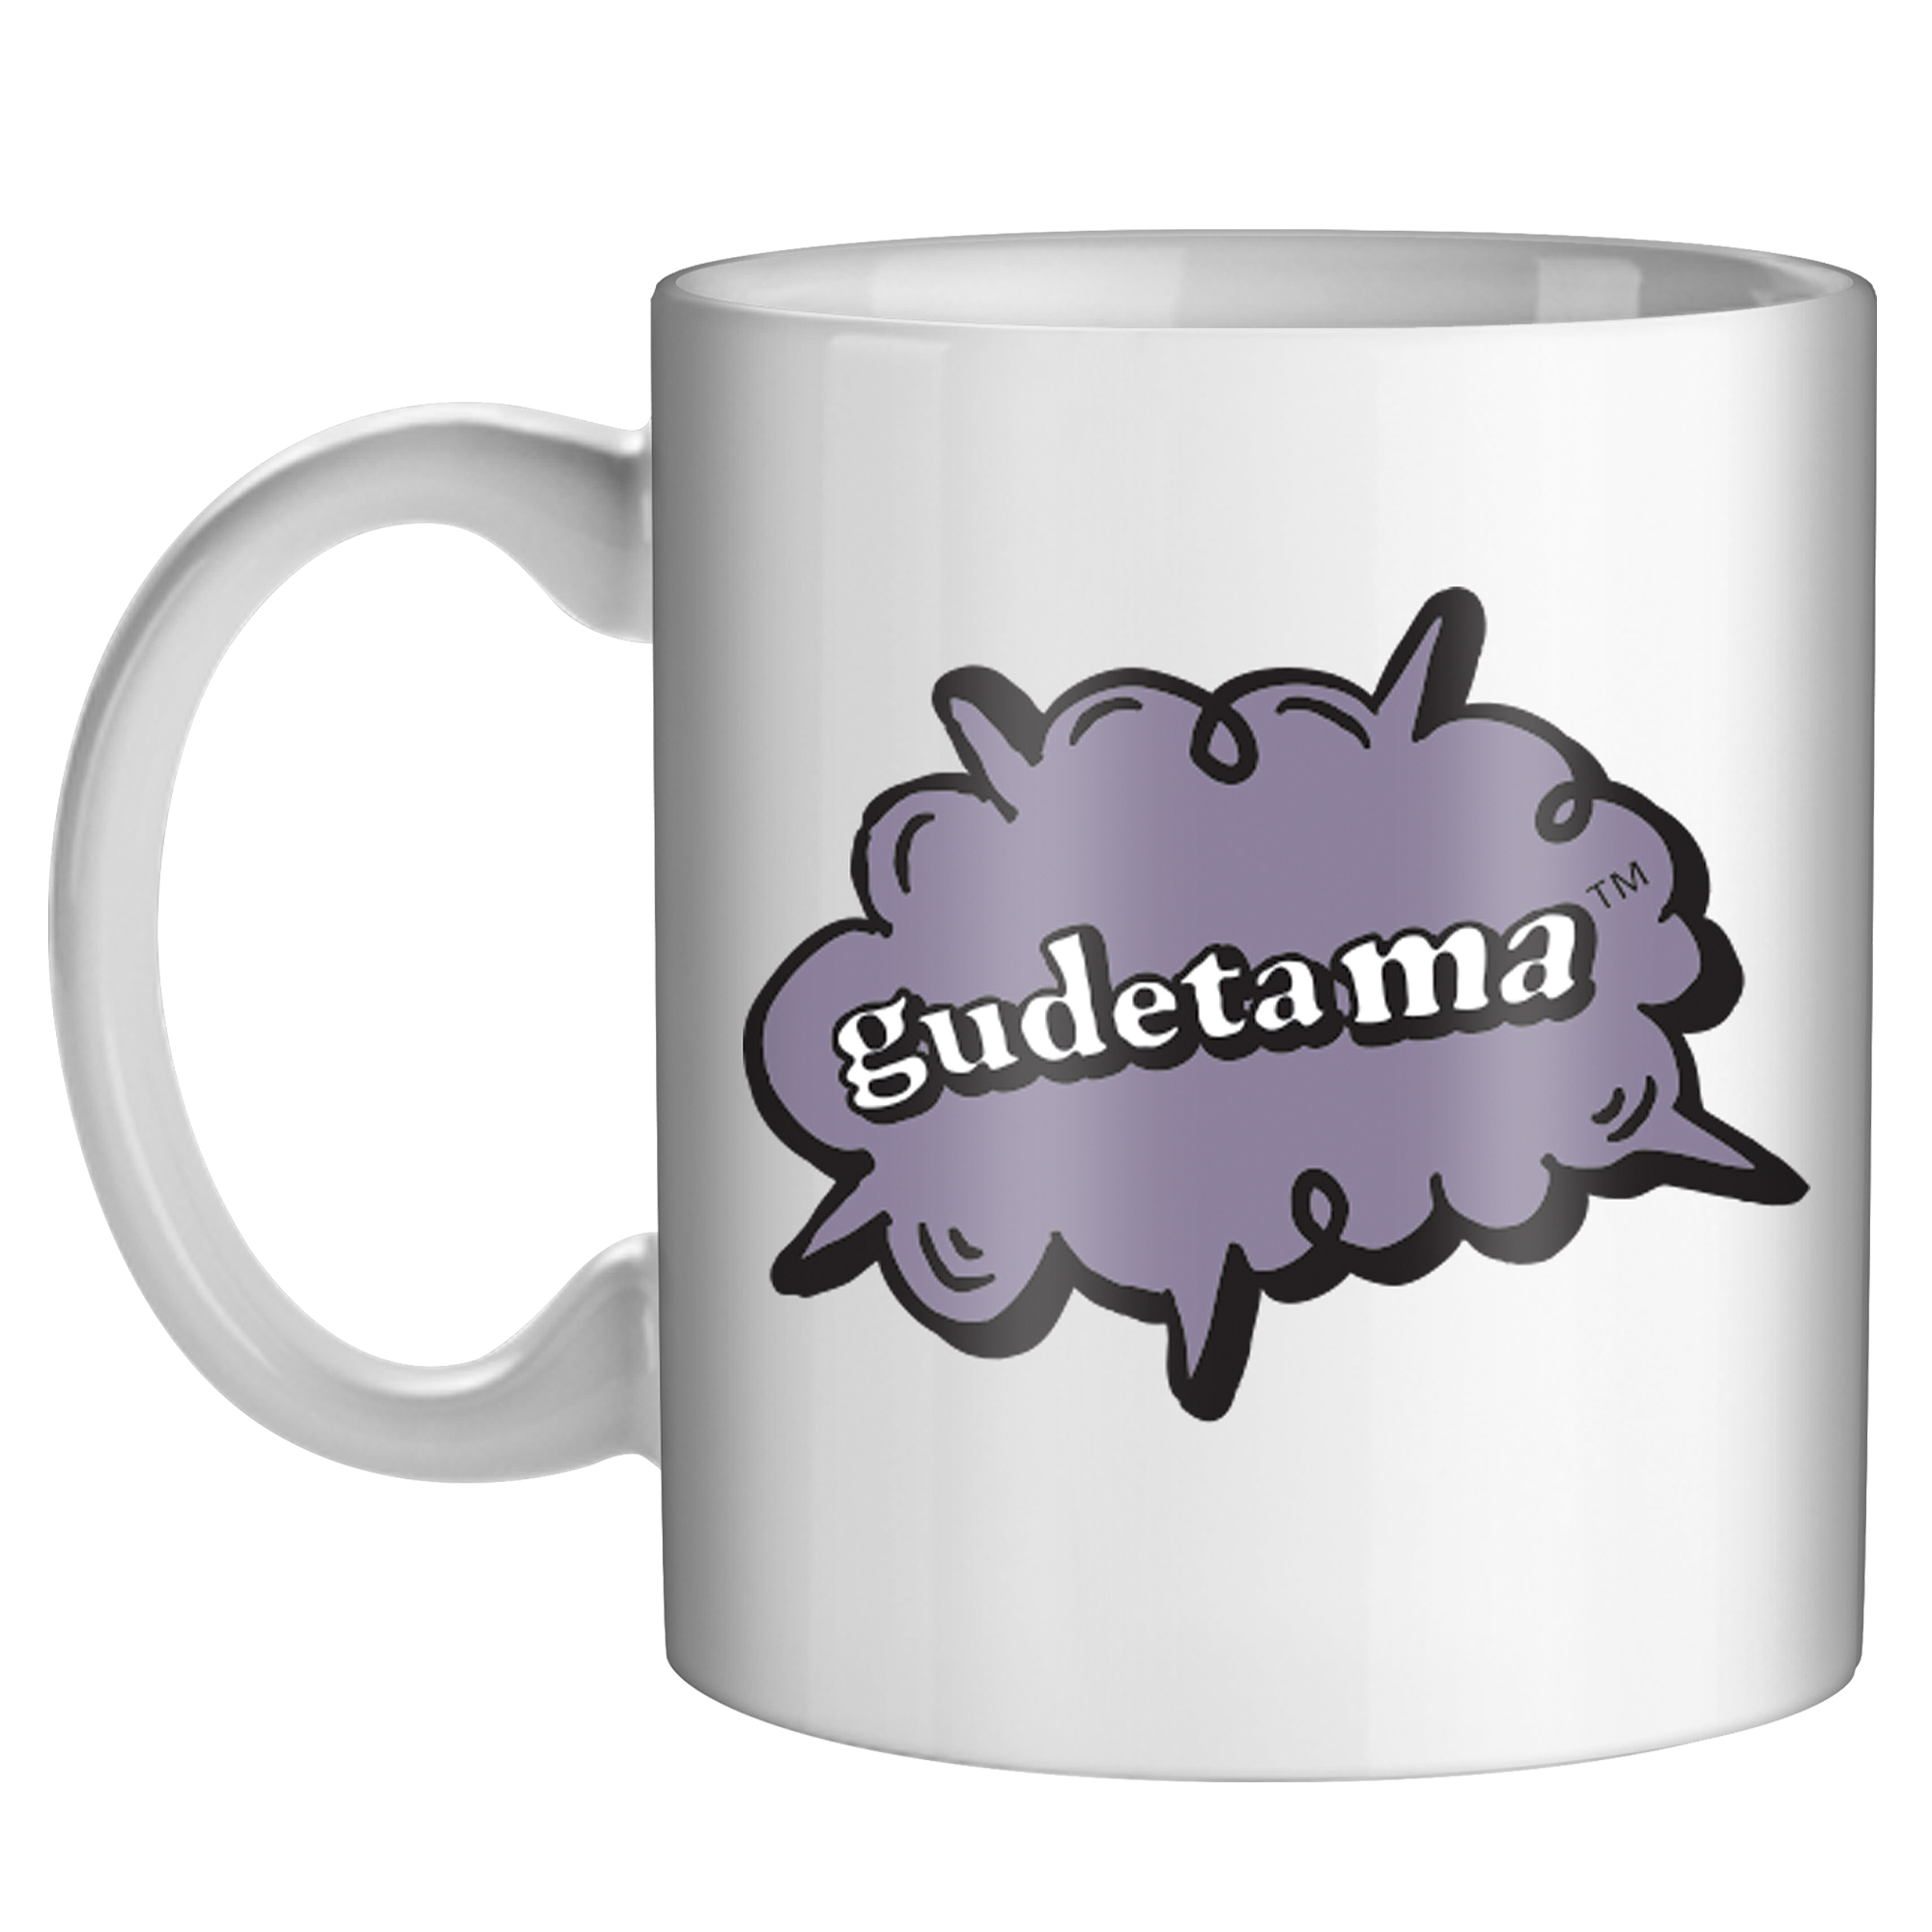 gudetama™ ceramic mug 20oz